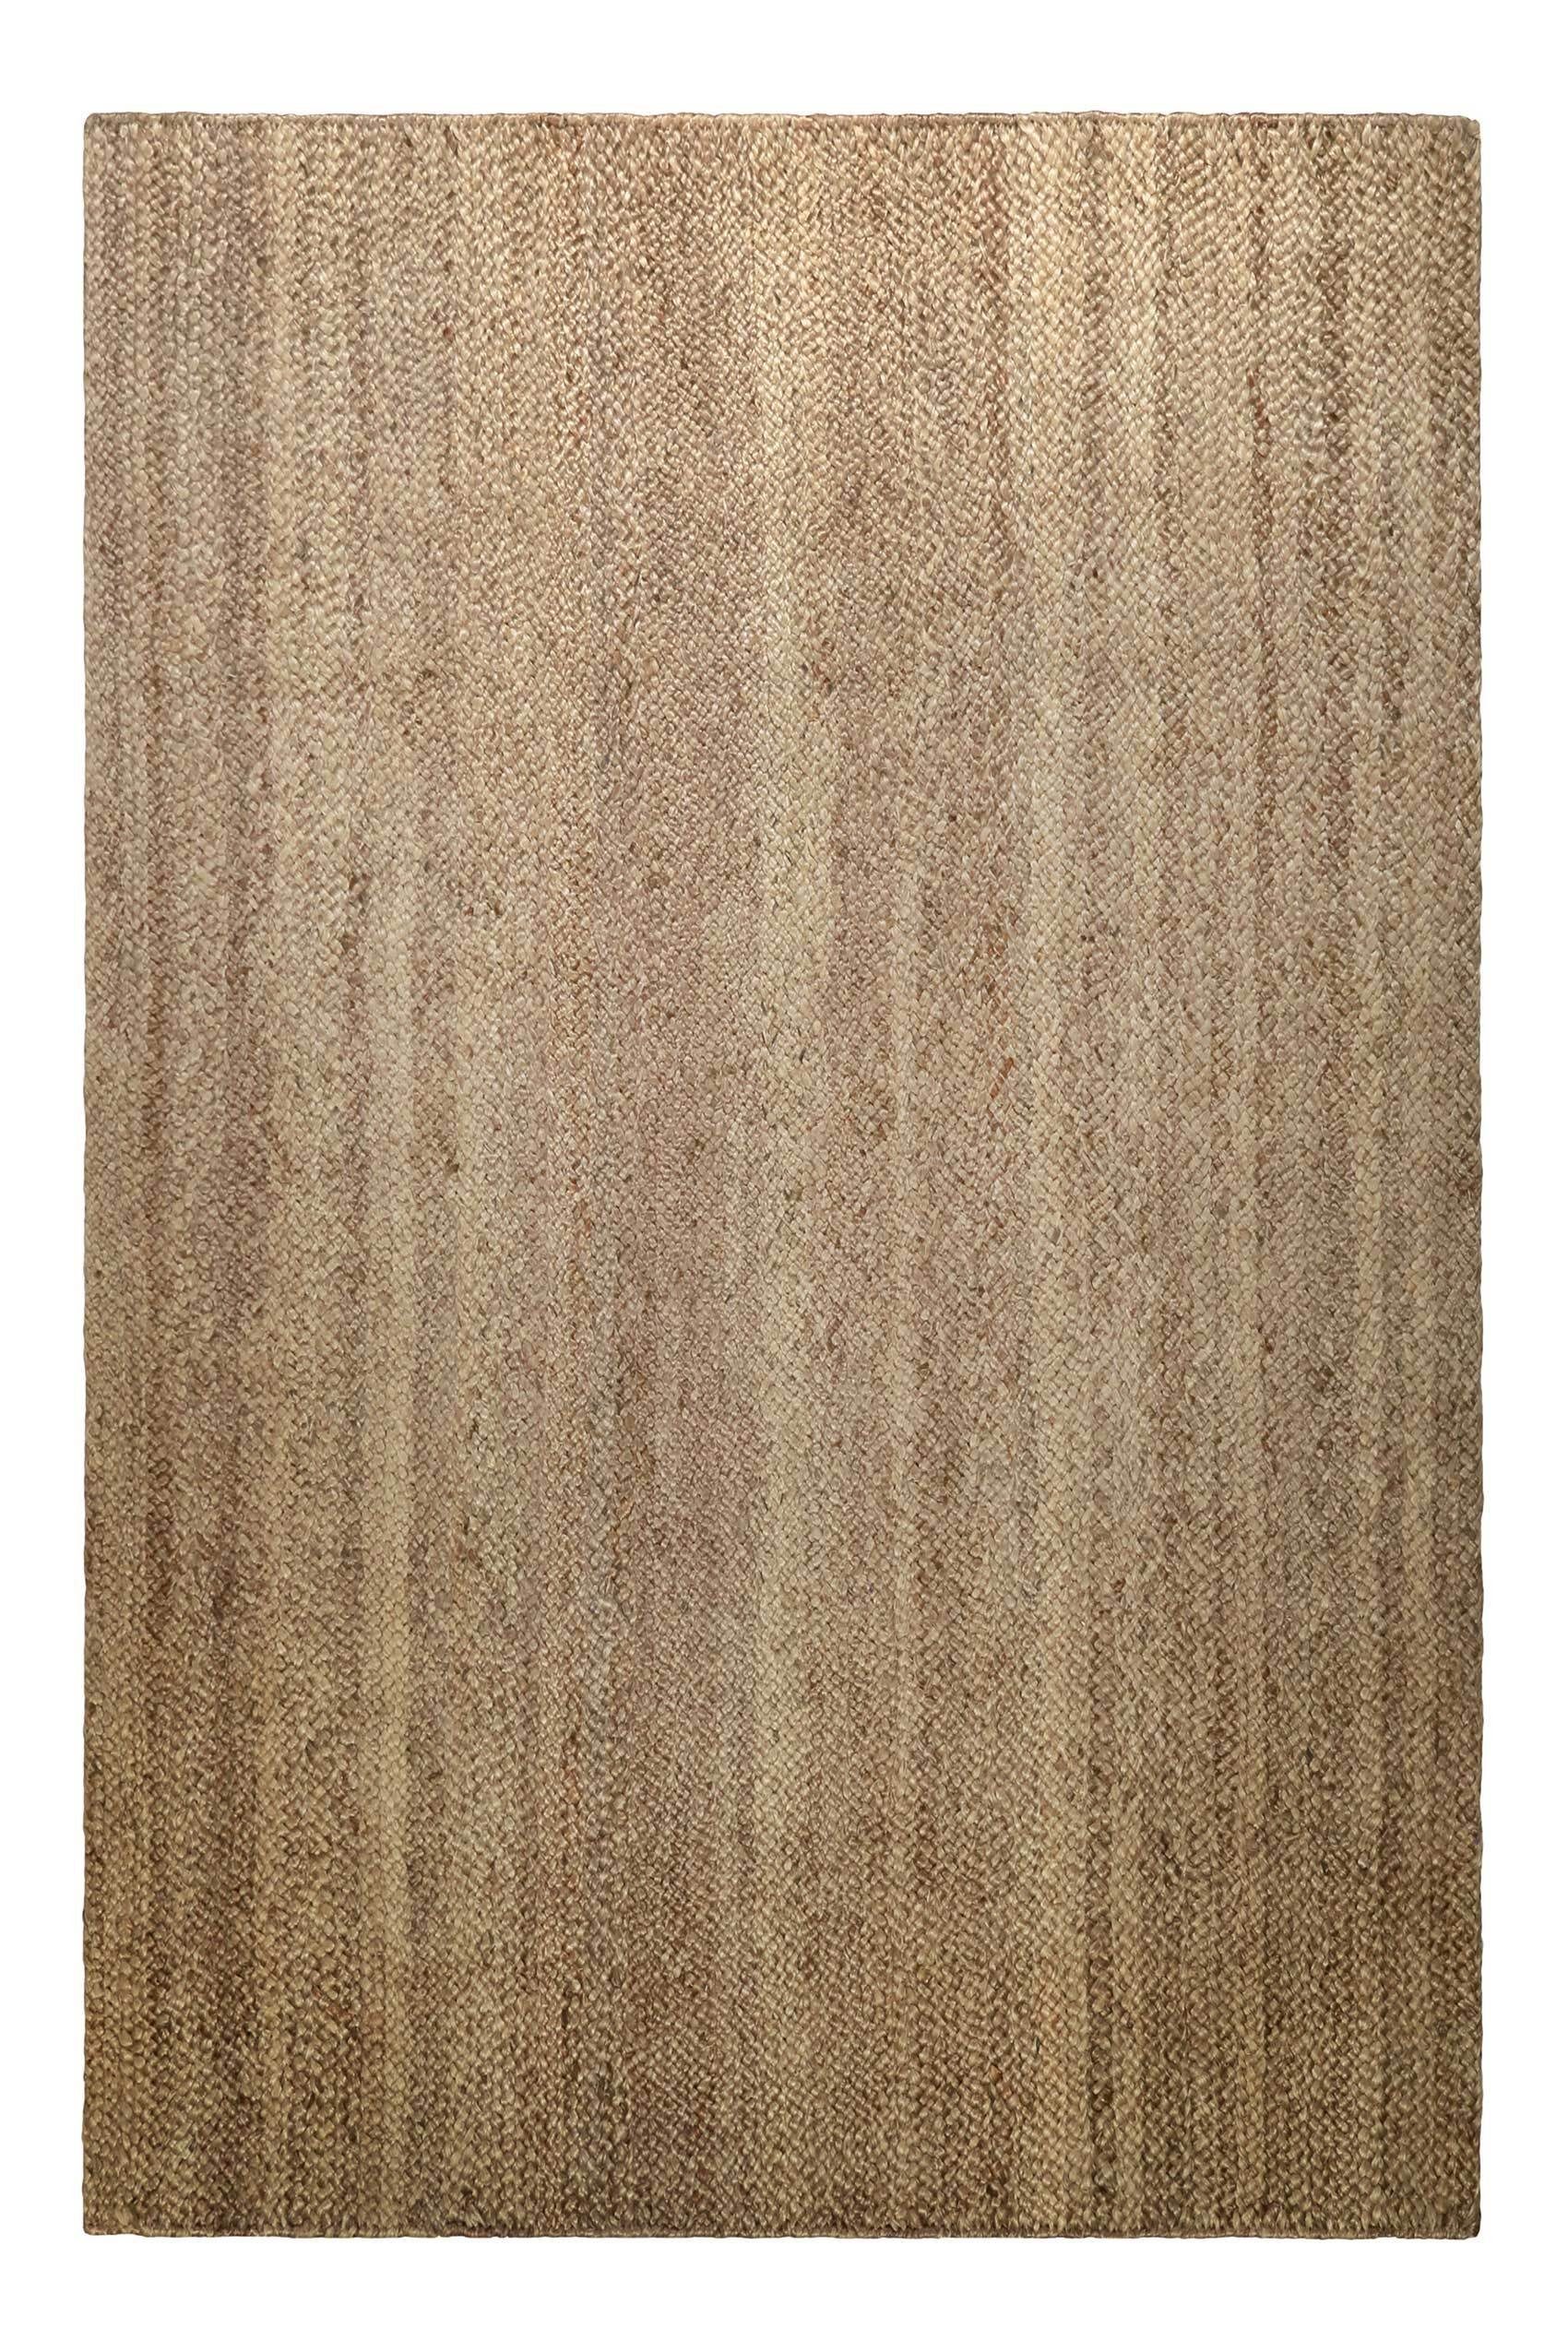 Teppich Camari, Green Looop, Höhe: 6 mm, handgewebter, nachhaltiger Jute Teppich, ideal für Wohn- Schlafzimmer